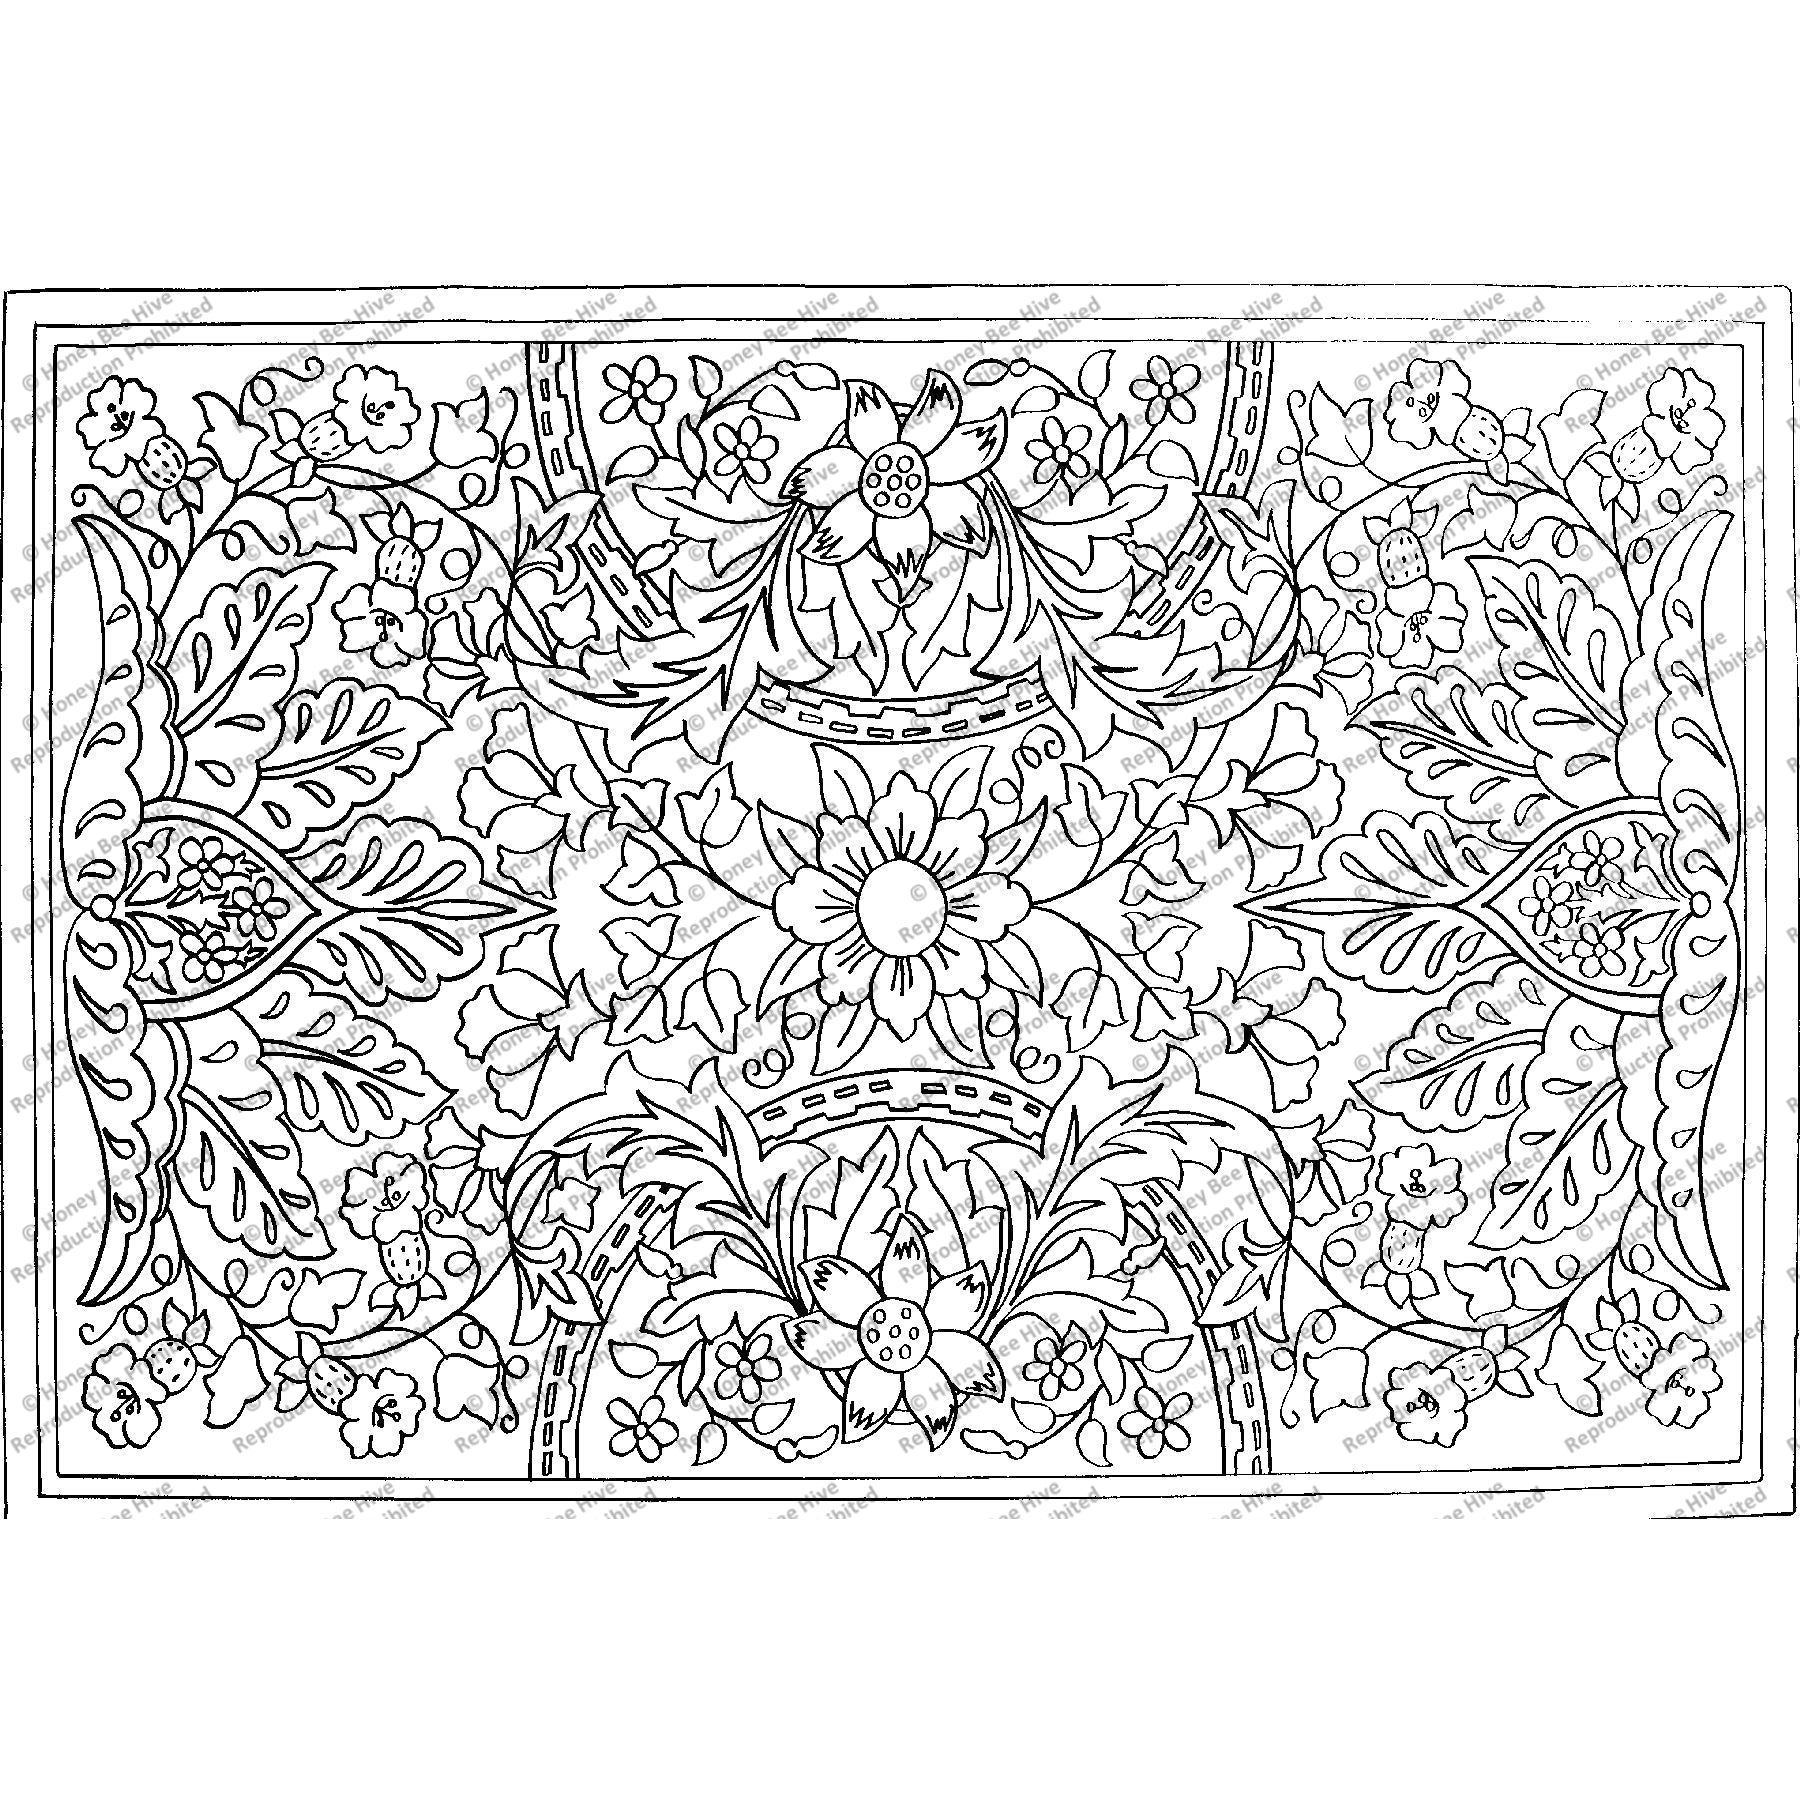 Morris Victorian, rug hooking pattern